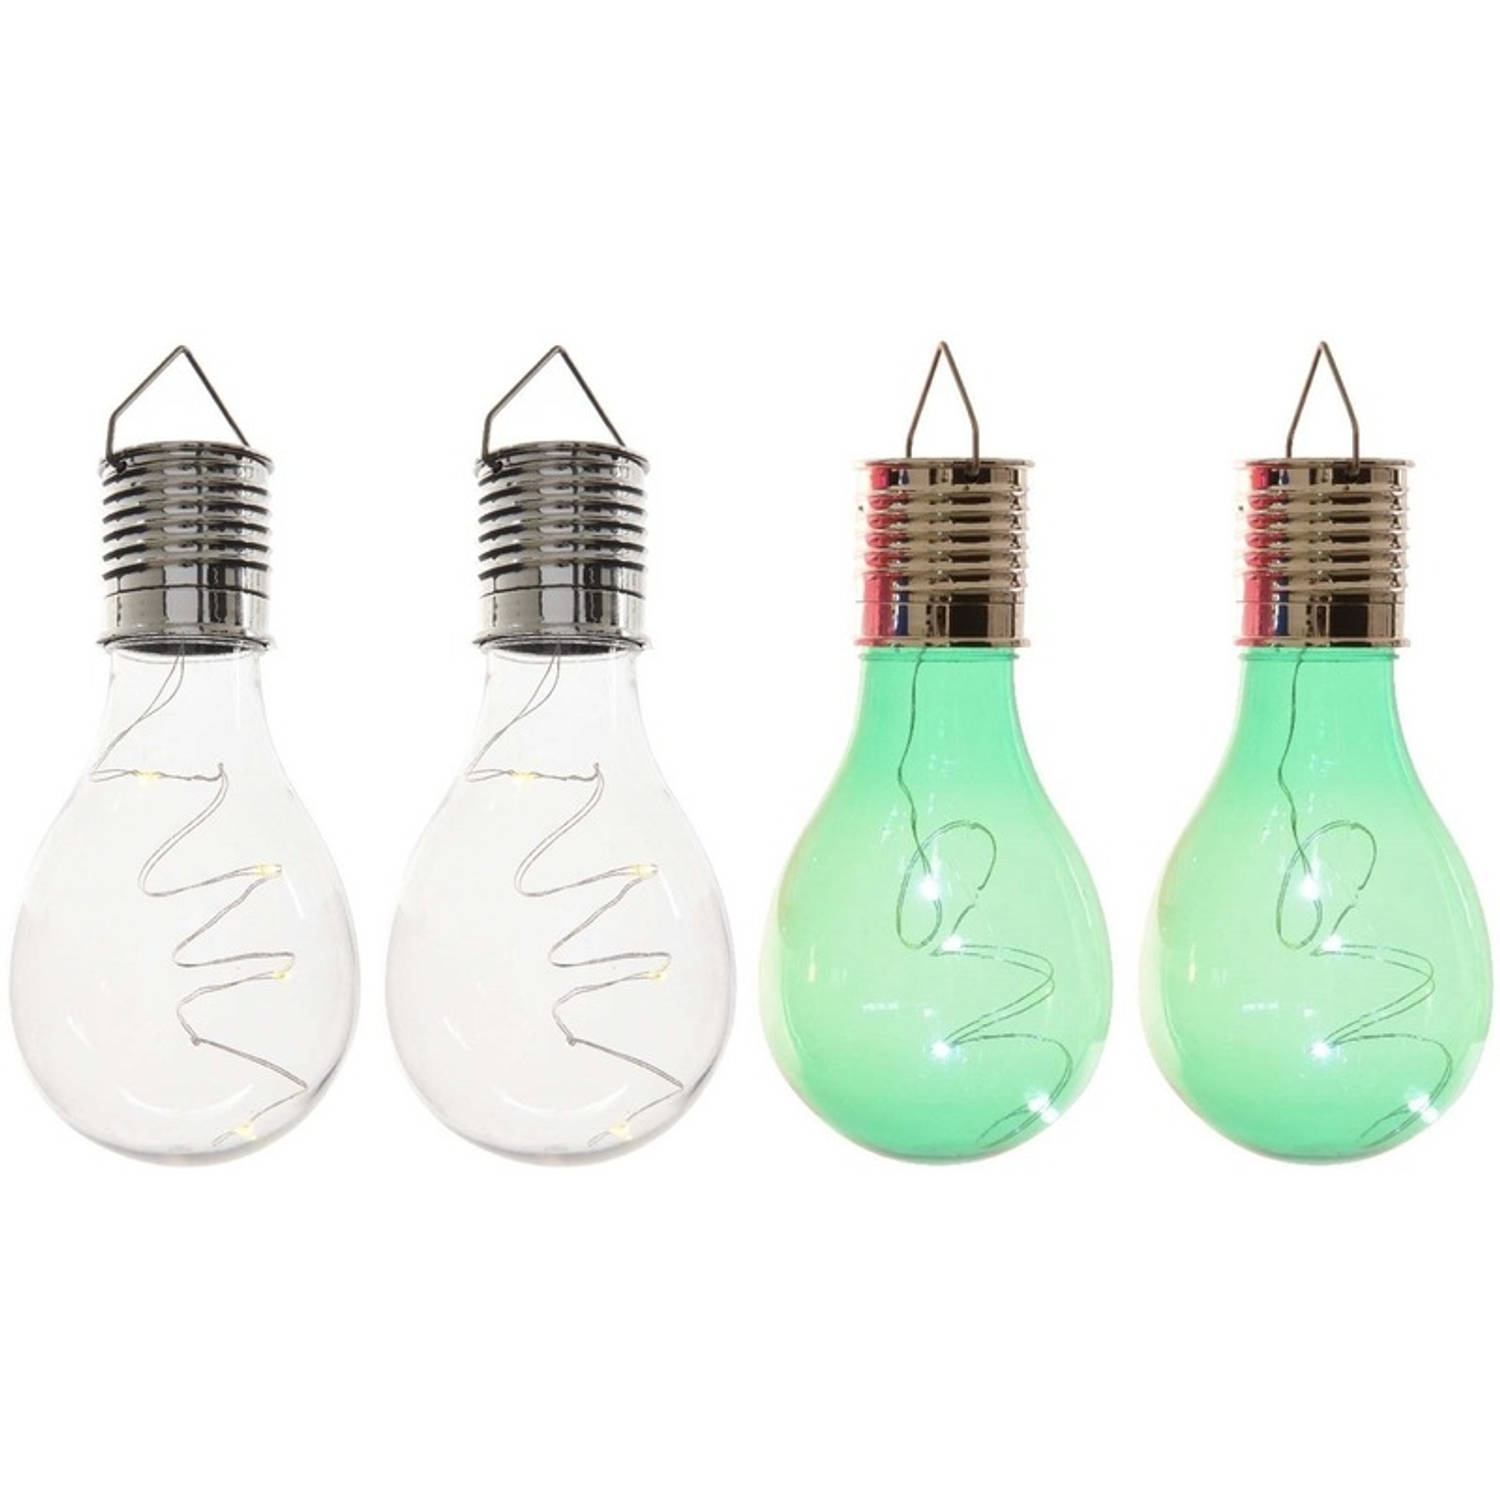 4x Buitenlampen/tuinlampen lampbolletjes/peertjes 14 cm transparant/groen - Buitenverlichting